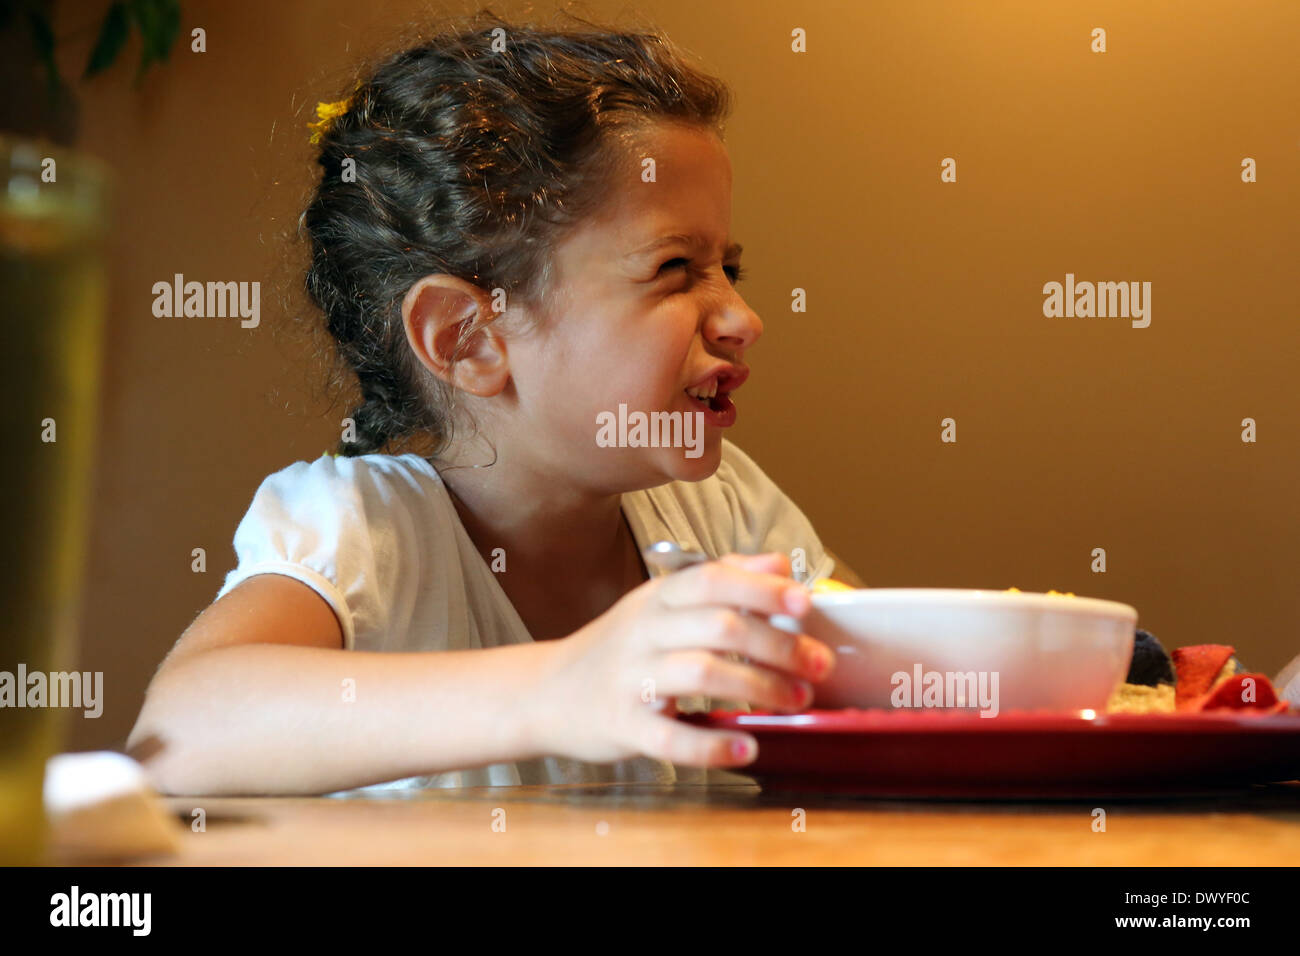 Du Bois, États-Unis d'Amérique, petite fille tire tout en mangeant le nez krauss Banque D'Images